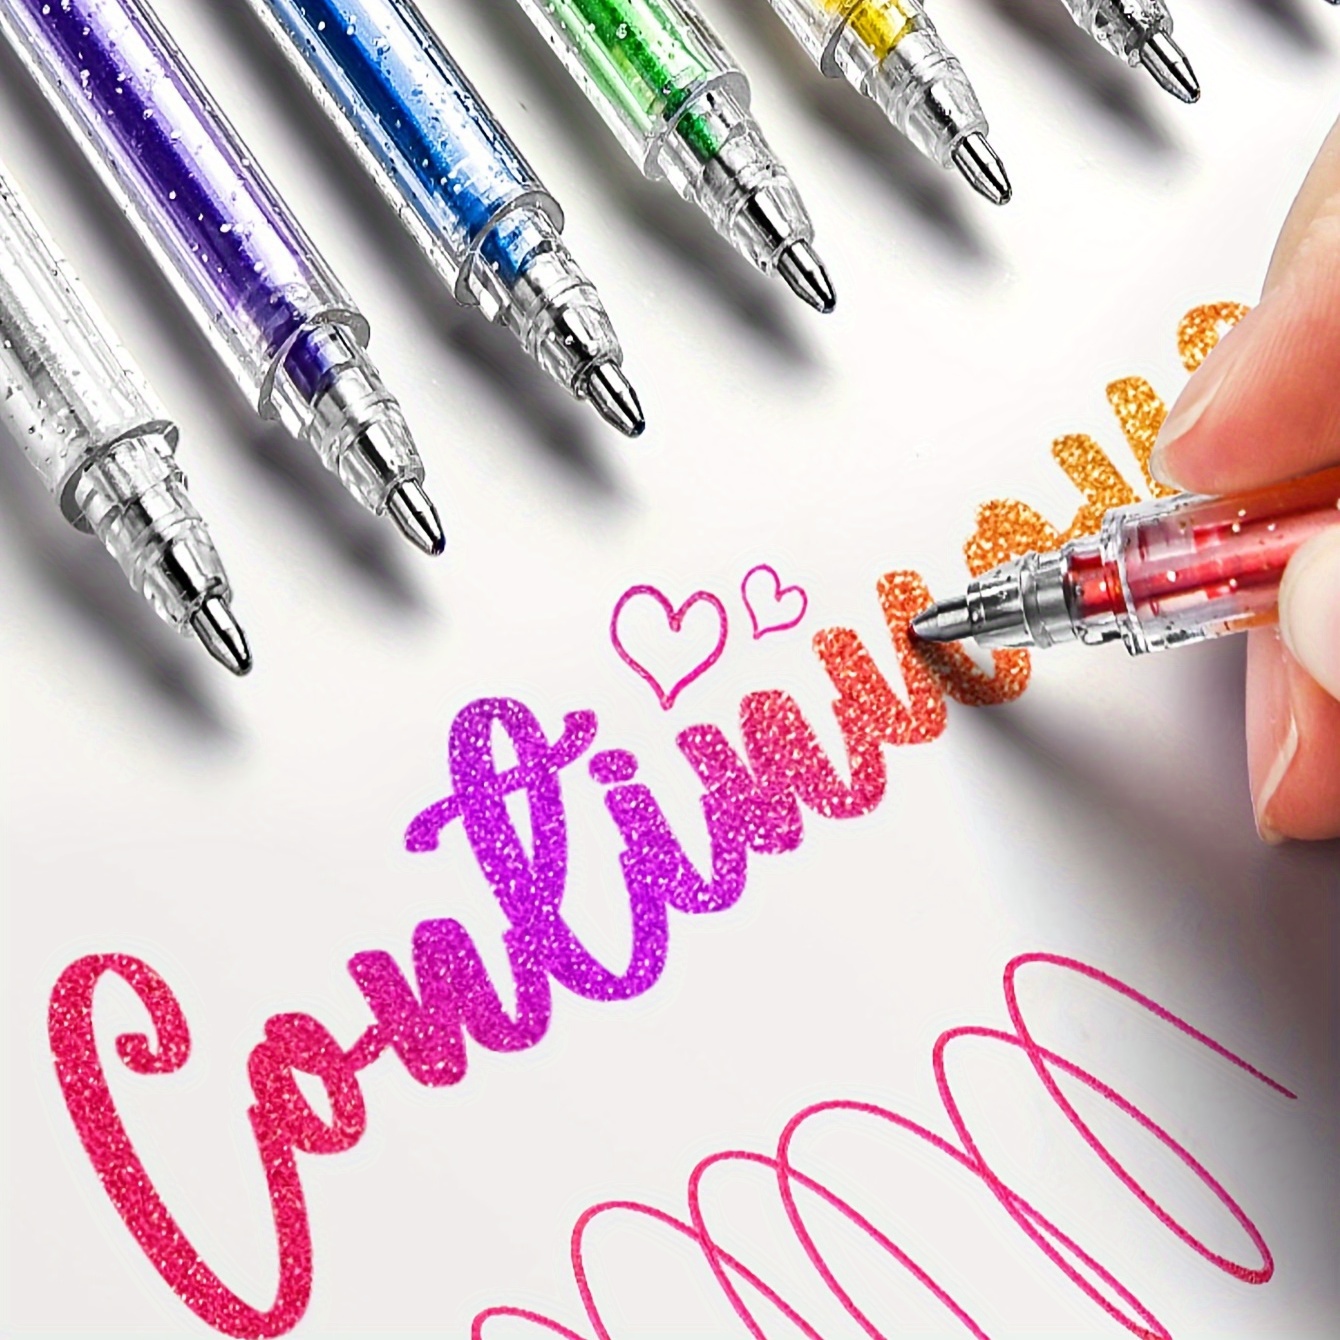  Magic Puffy Pens, DIY Bubble Popcorn Drawing Pens